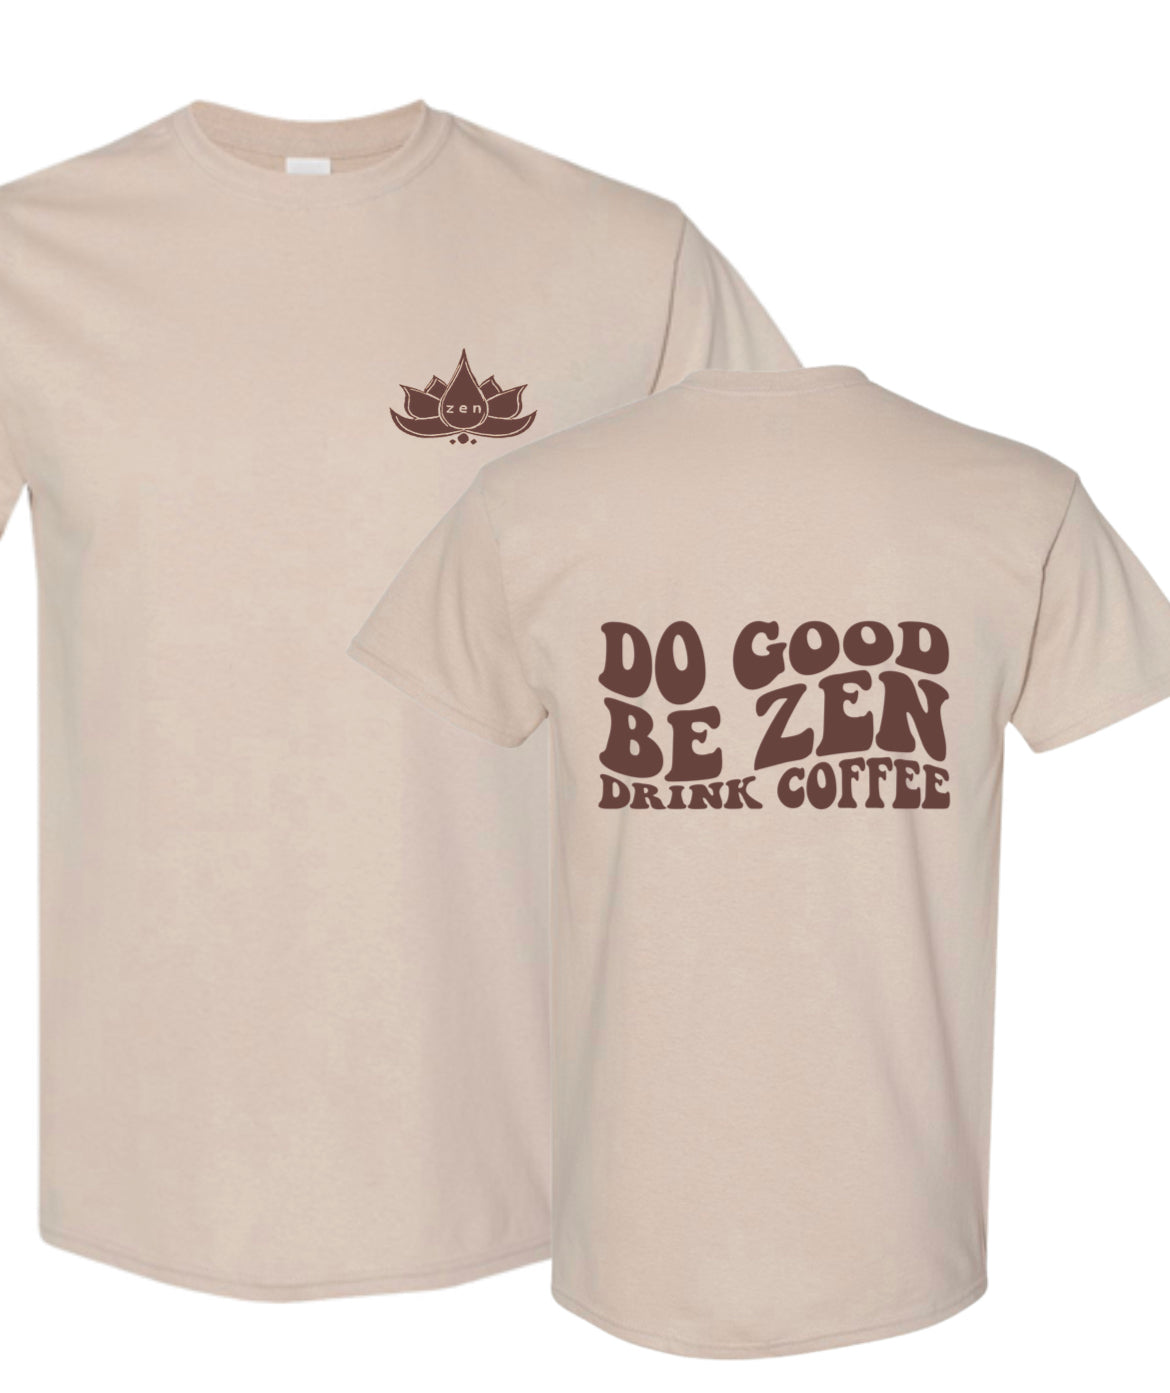 “Do Good Be Zen Drink Coffee” T-Shirt